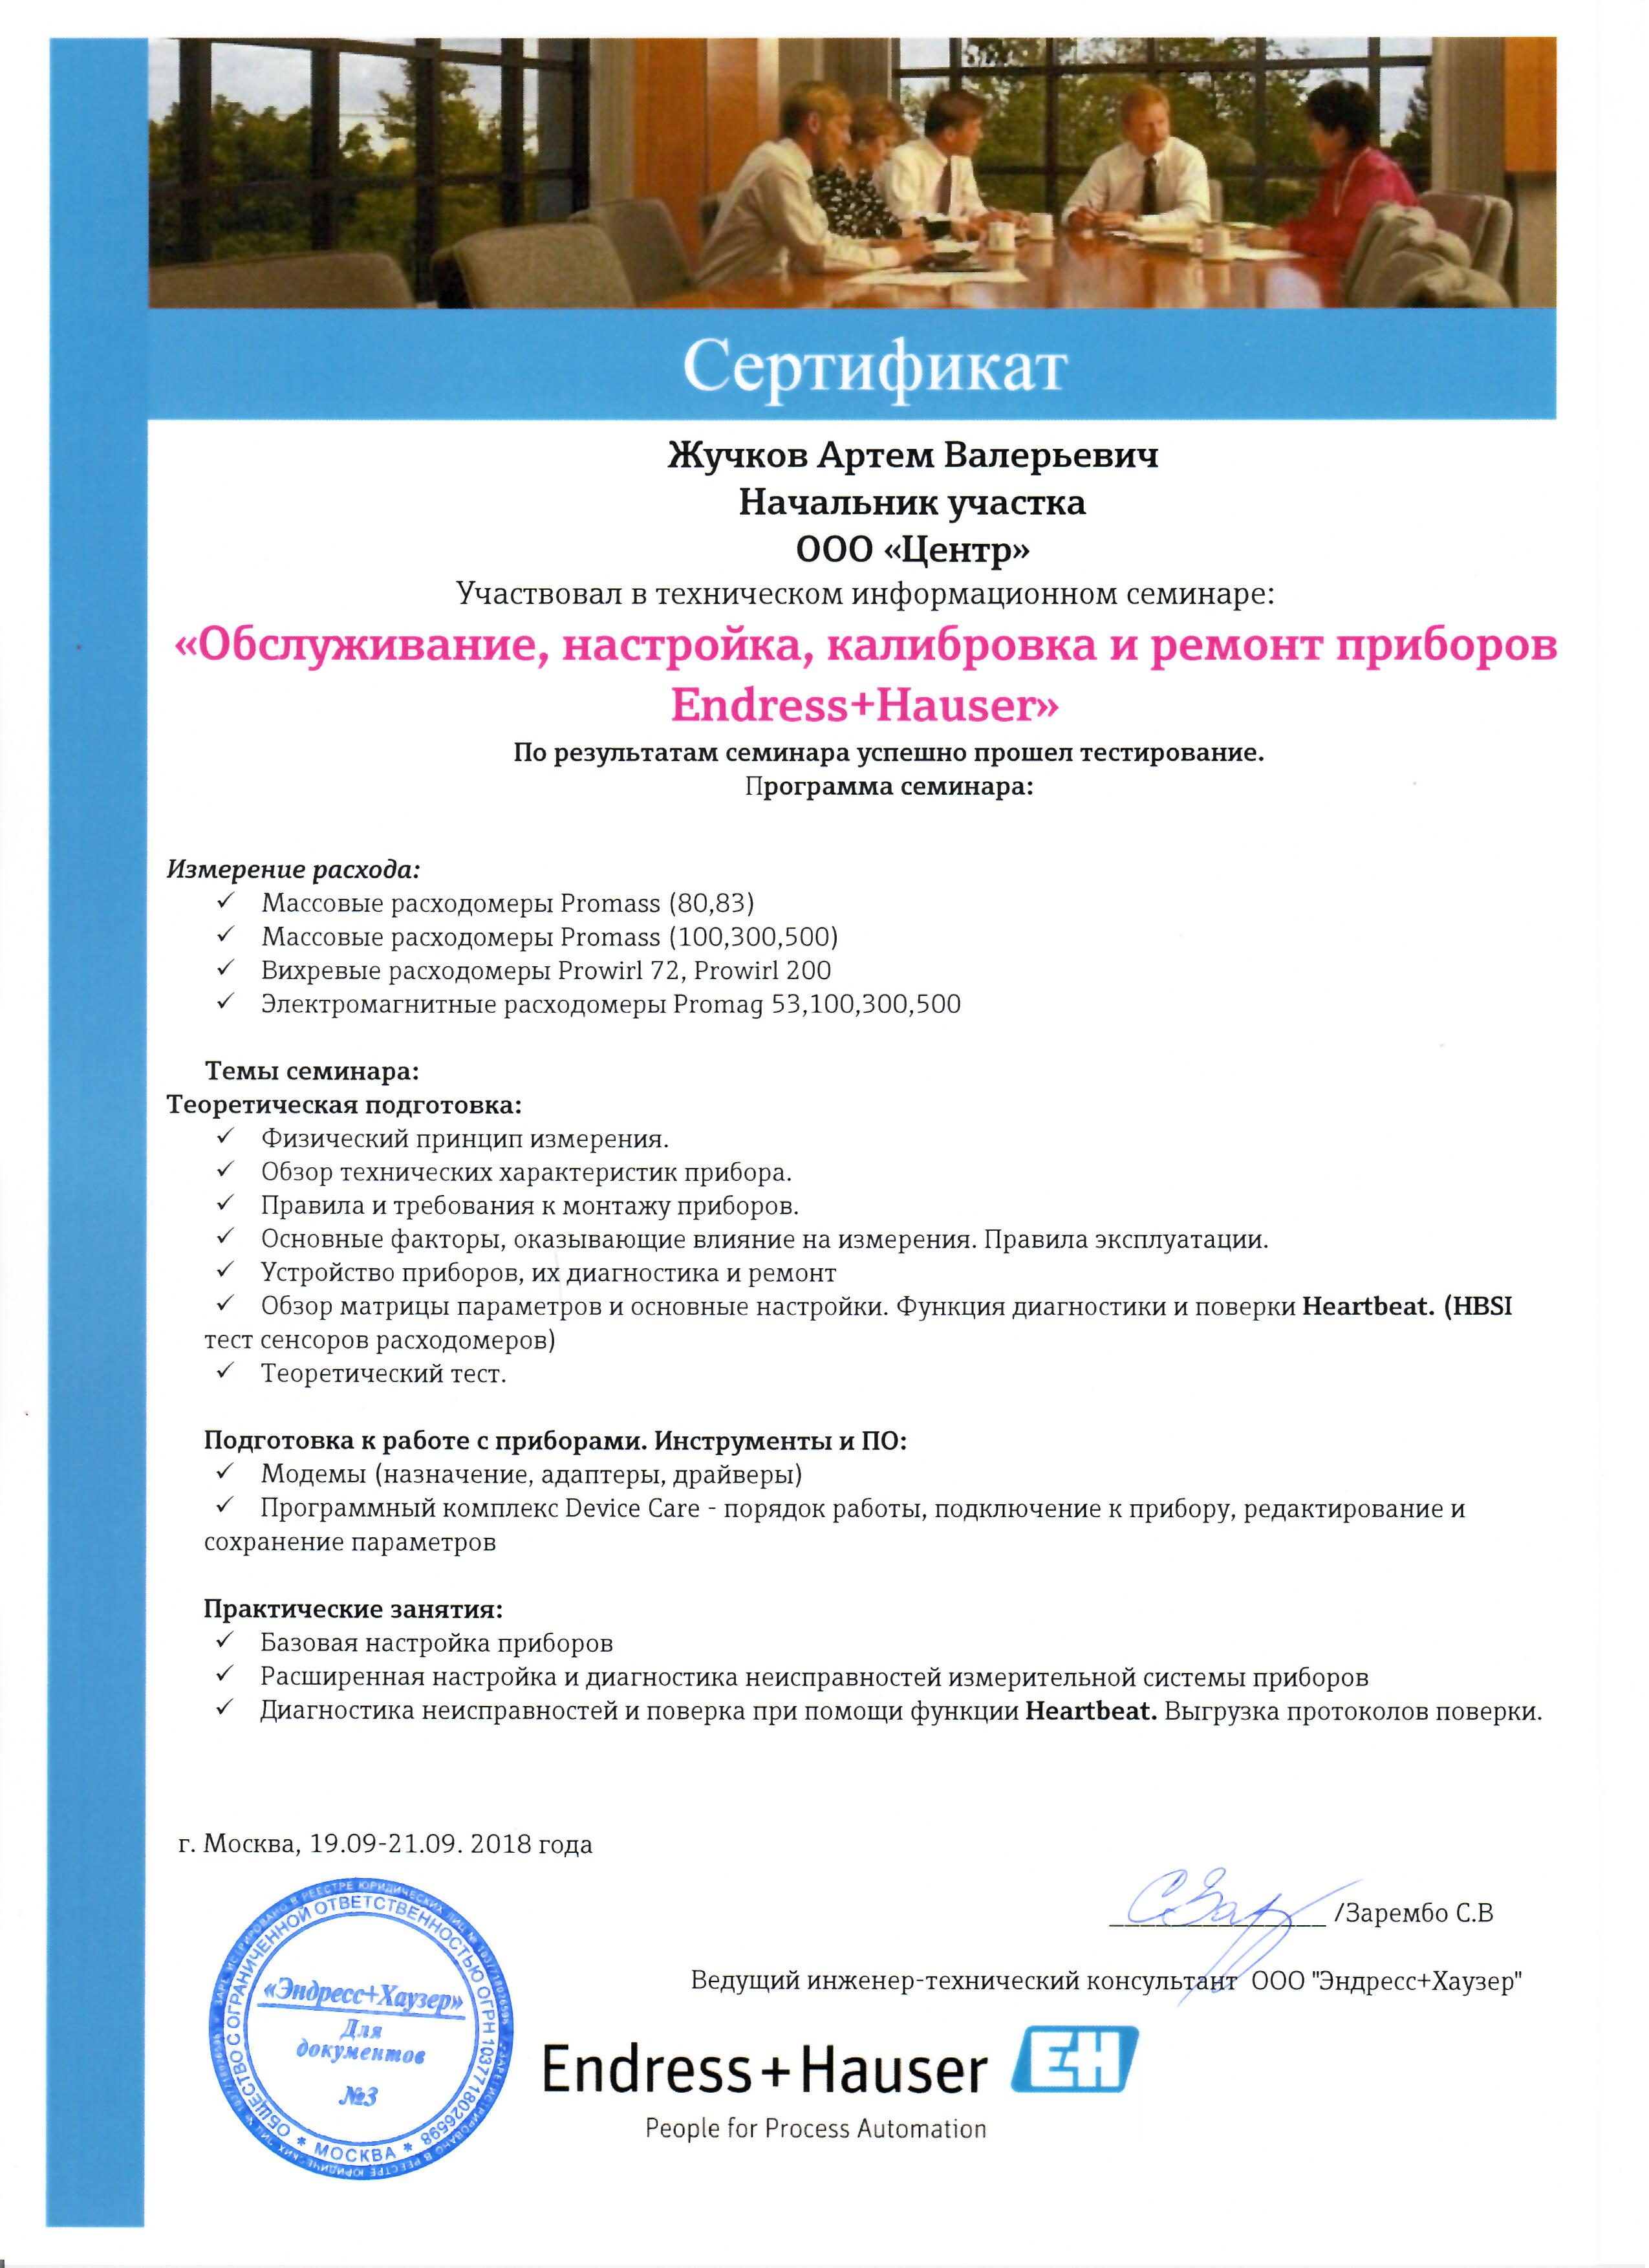 Сертификат Endress+Hauser Обслуживание,настройка,калибровка и ремонт приборов (Жучков А.В.)